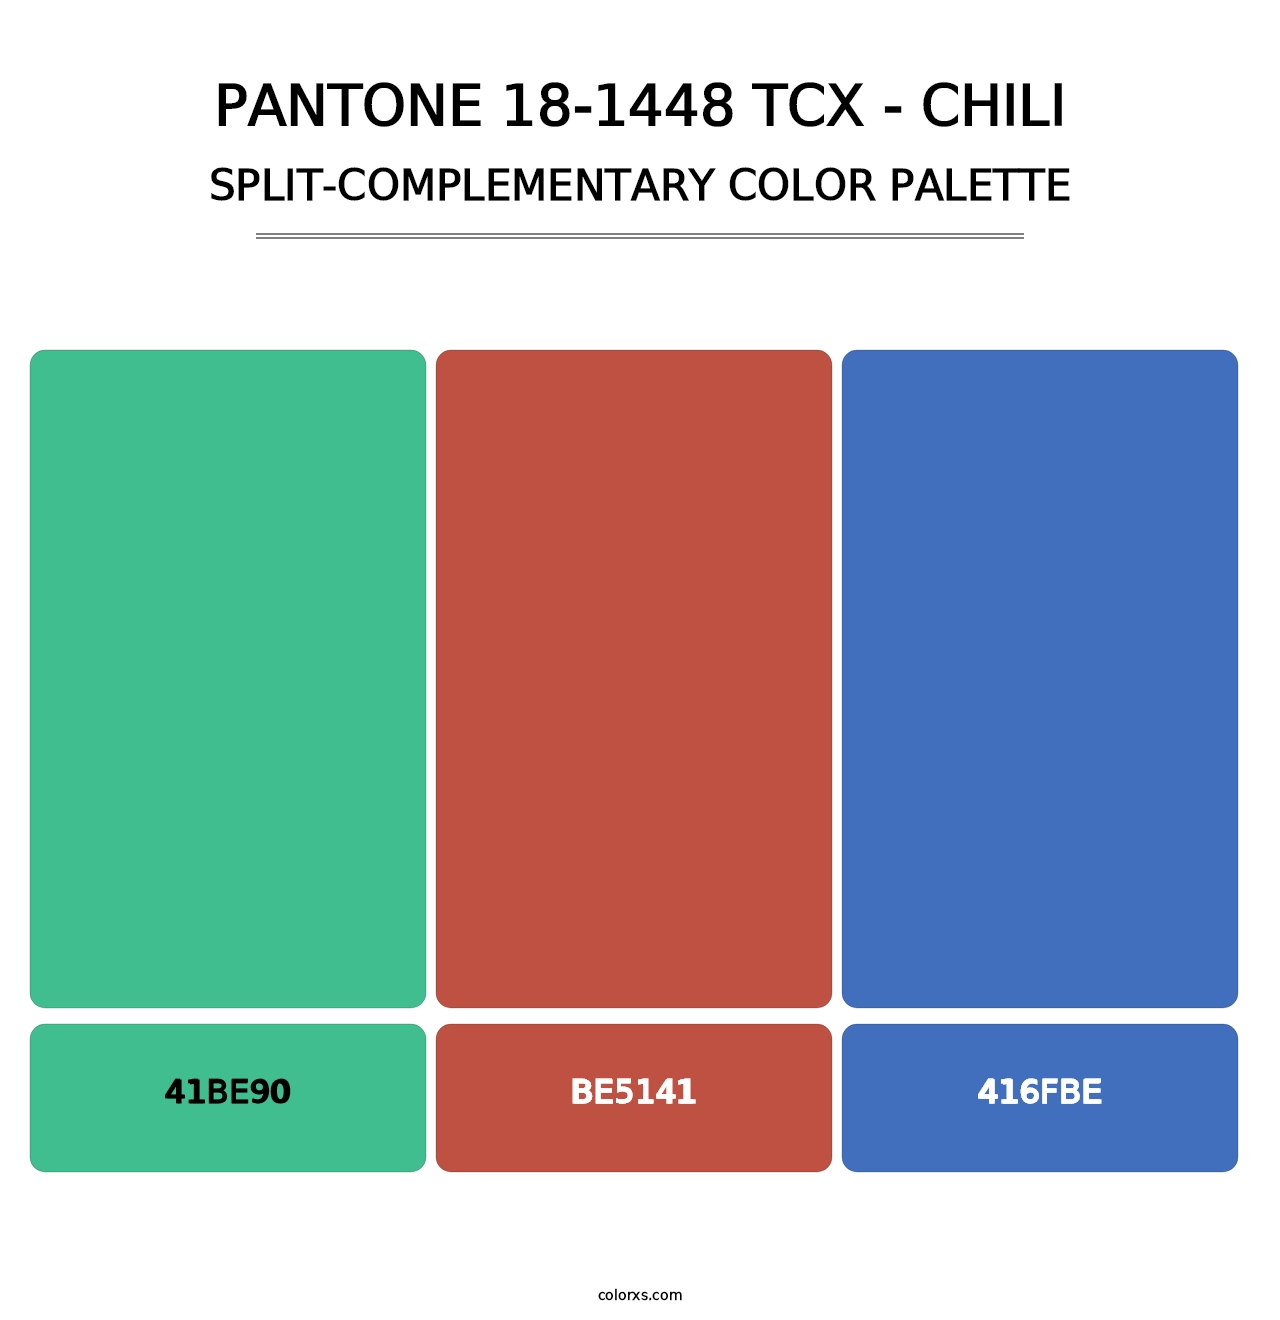 PANTONE 18-1448 TCX - Chili - Split-Complementary Color Palette